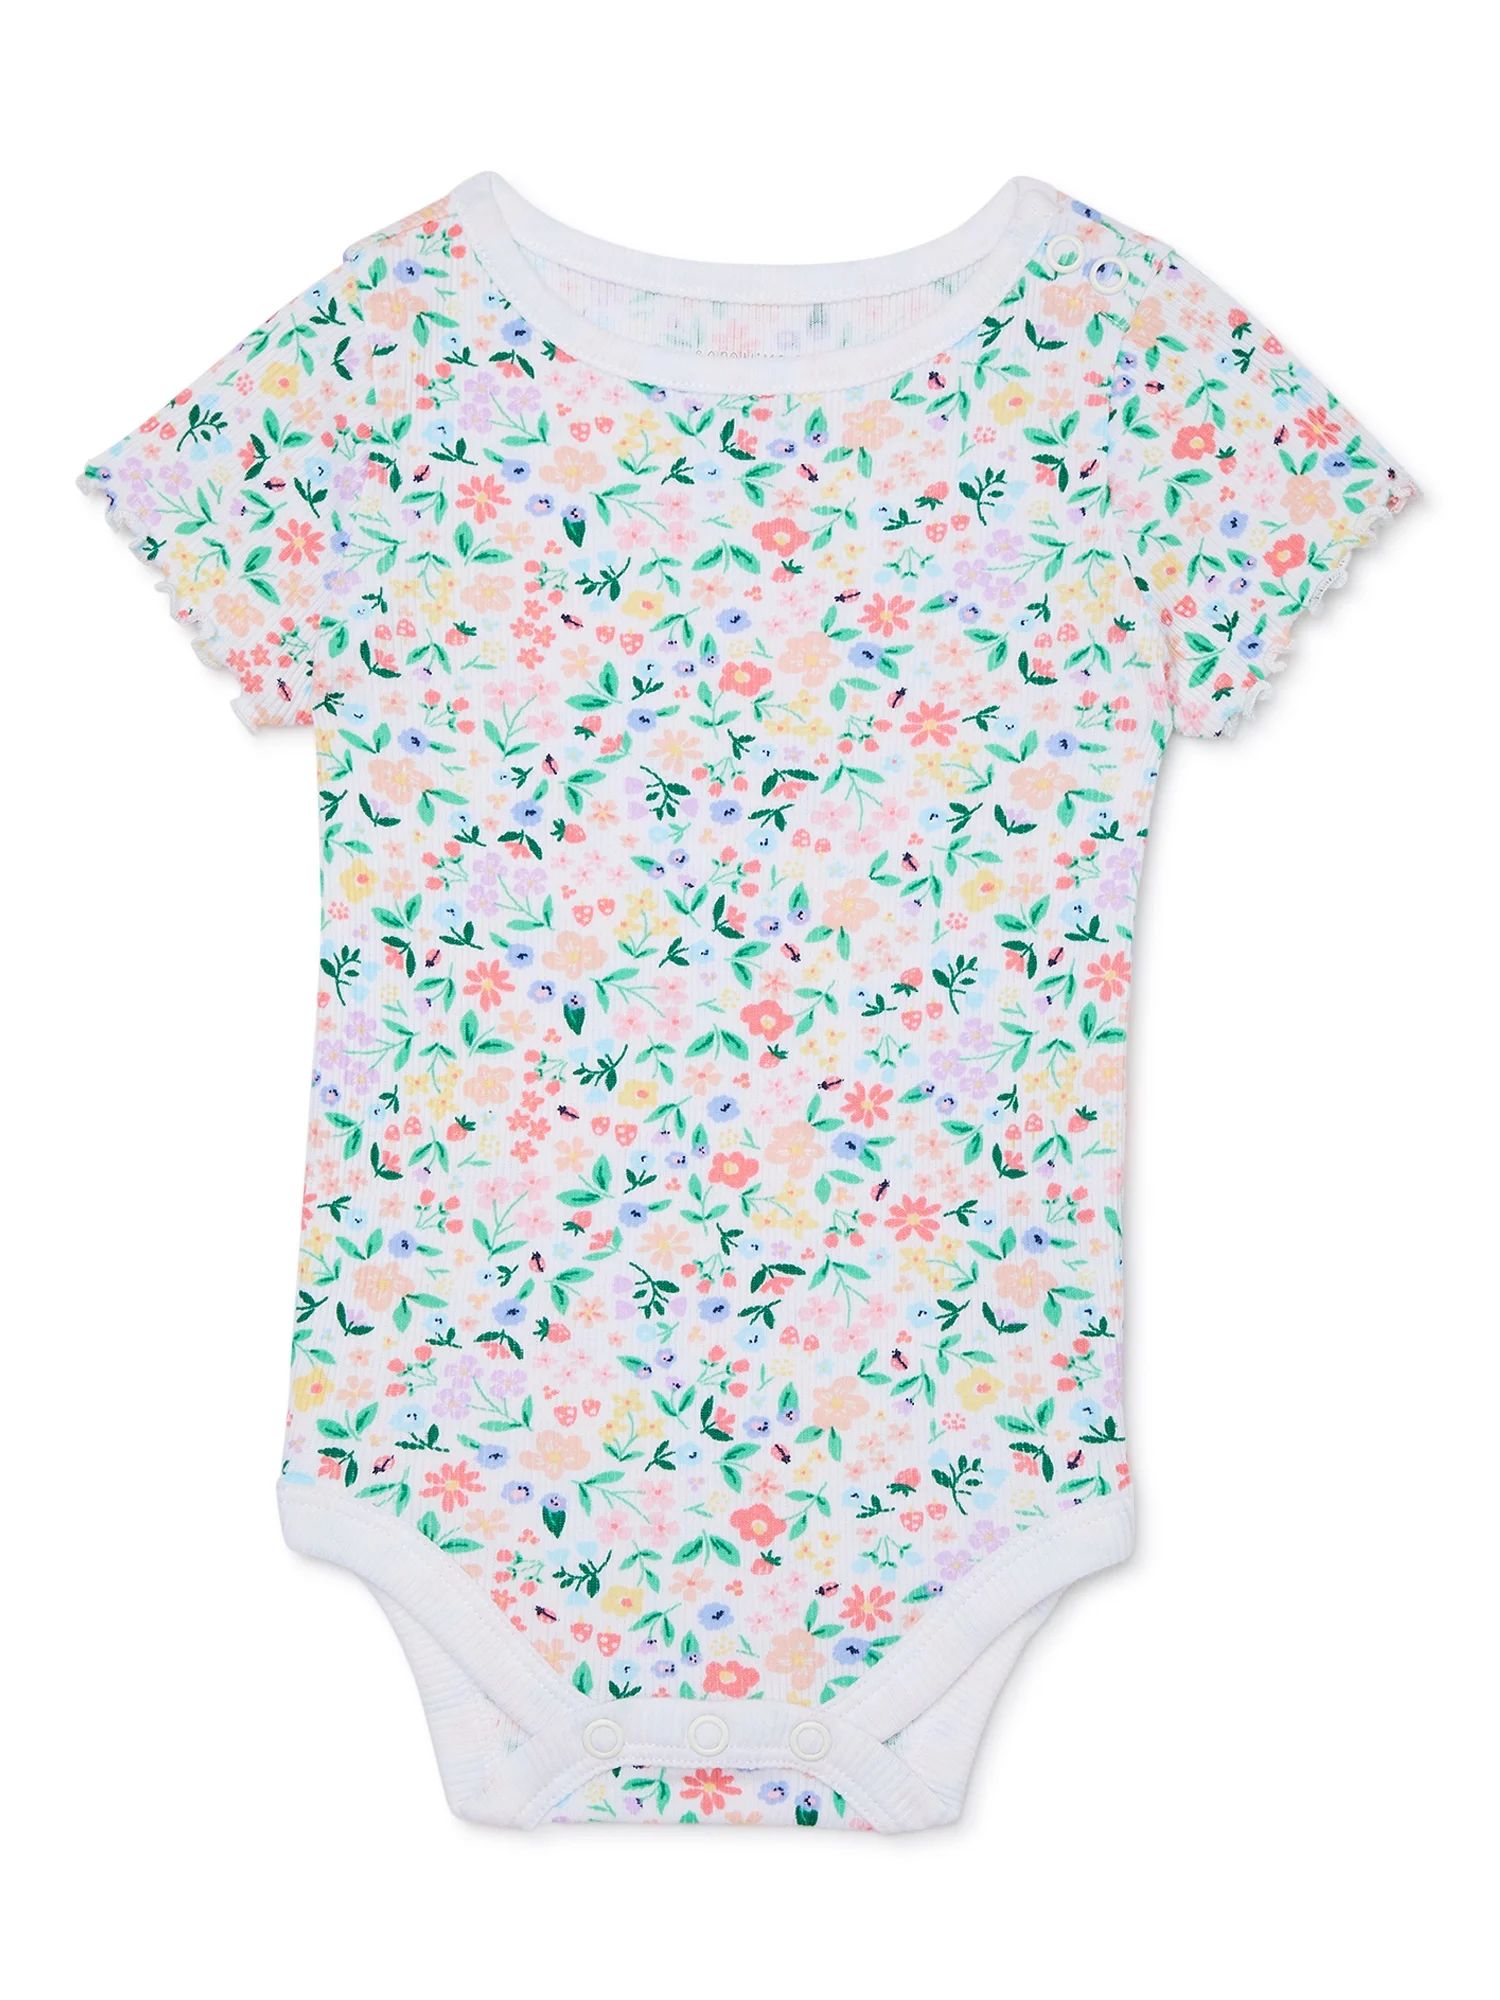 Garanimals Baby Girls’ Pointelle Bodysuit with Short Sleeves, Sizes 0M-24M | Walmart (US)